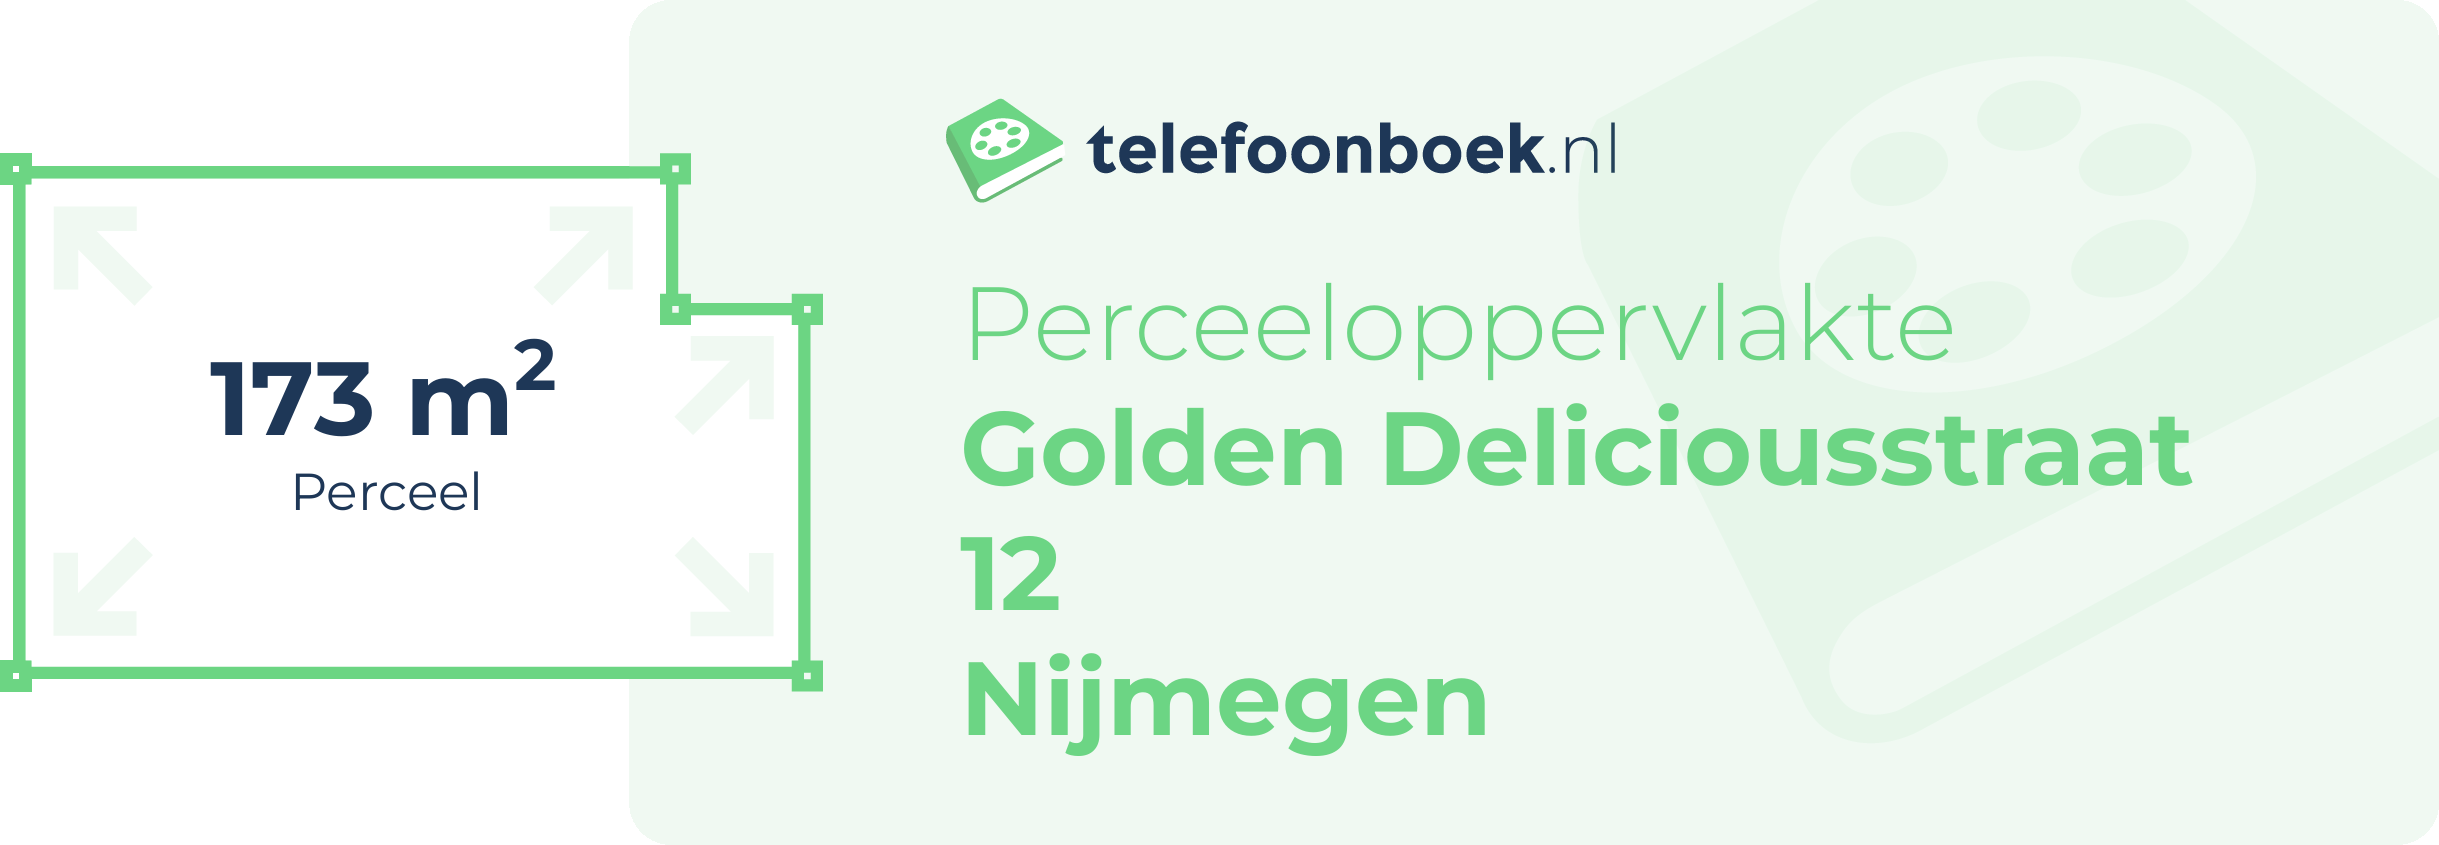 Perceeloppervlakte Golden Deliciousstraat 12 Nijmegen